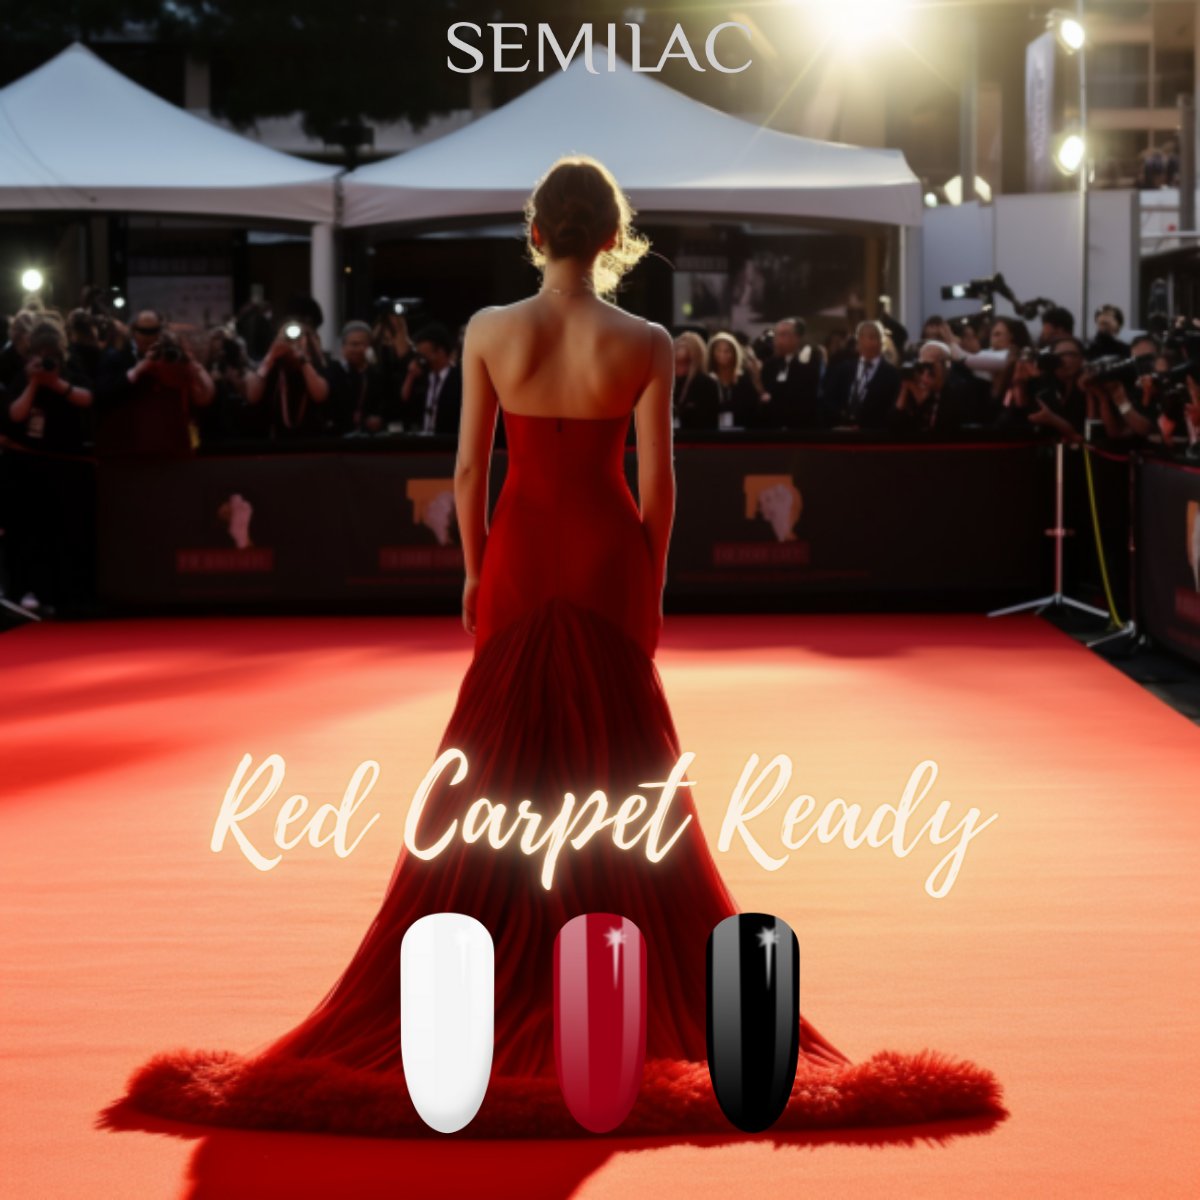 Semilac Red Carpet Ready Bundle - Semilac UK